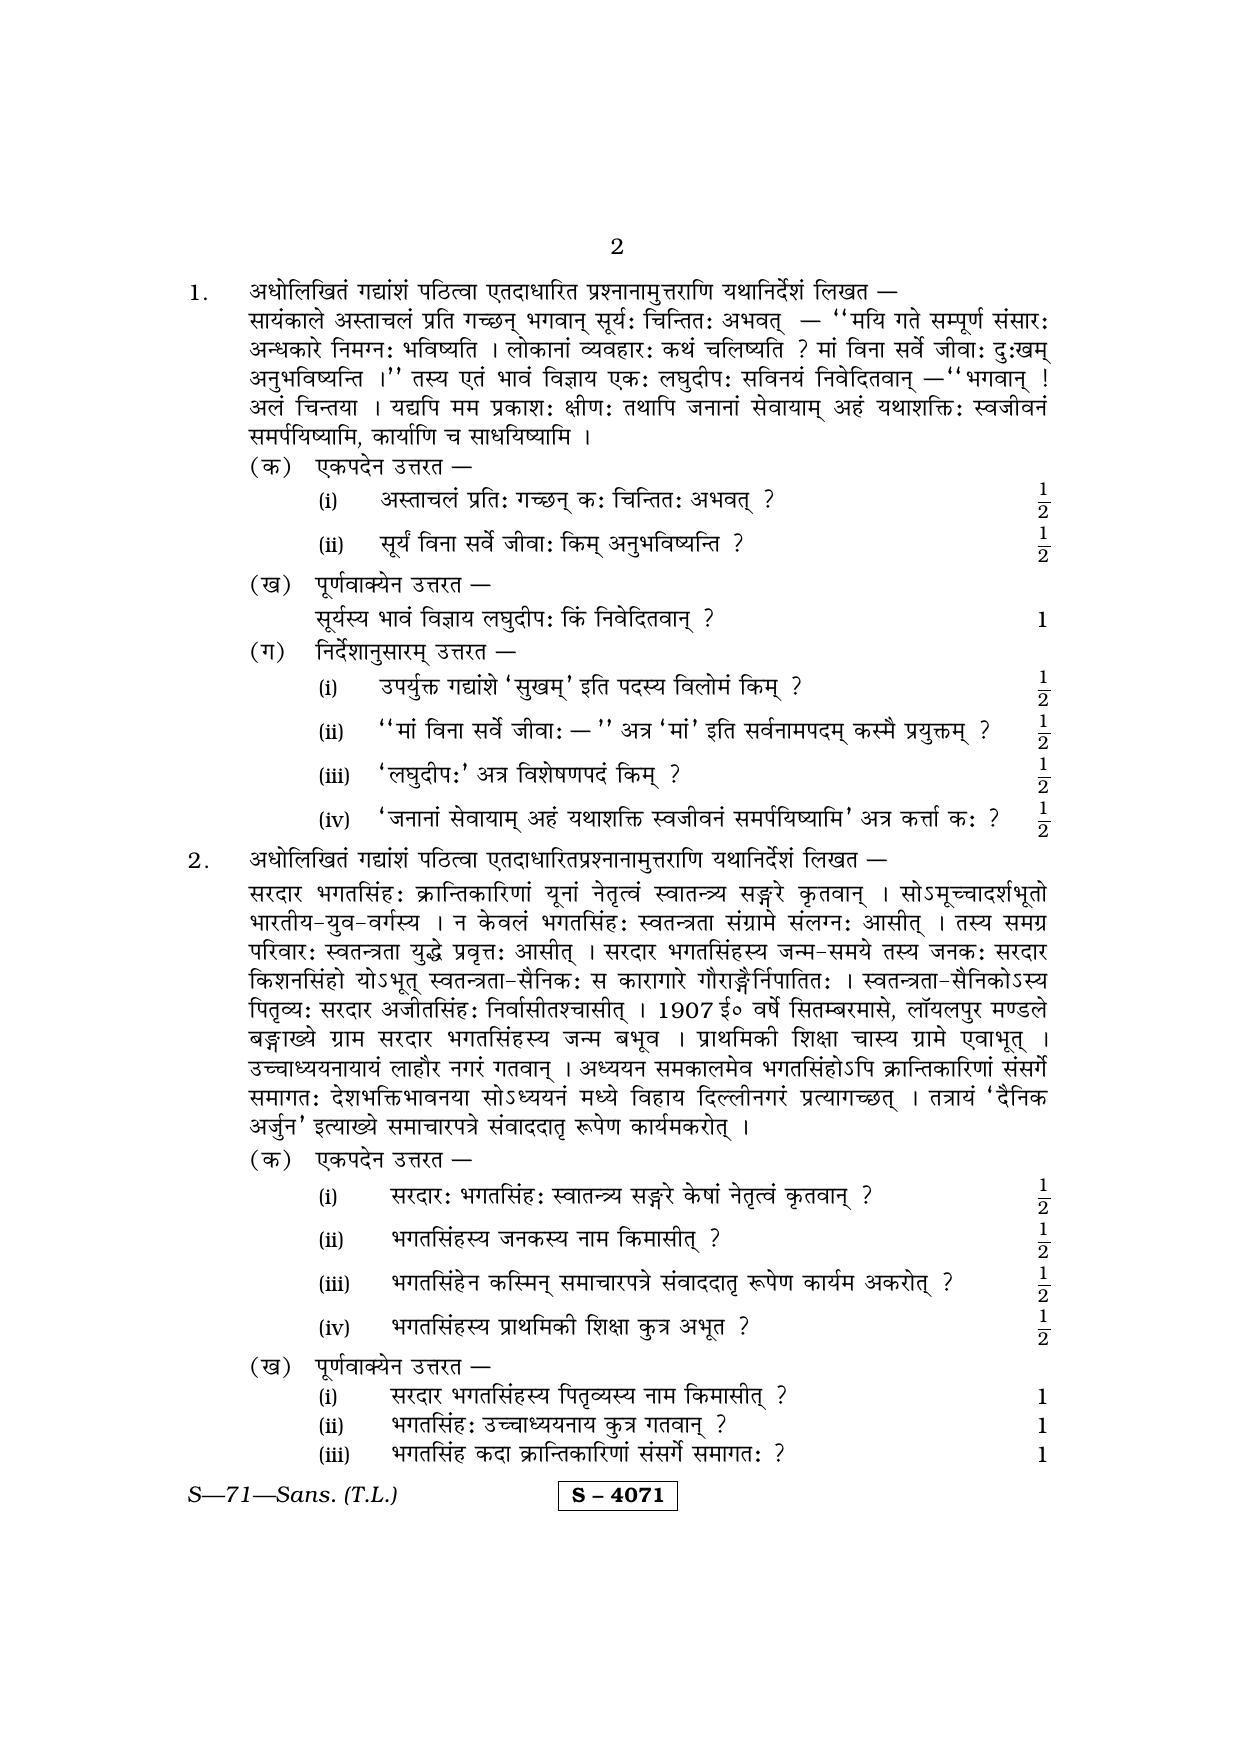 RBSE Class 10 Sanskrit (T.L.) 2015 Question Paper - Page 2